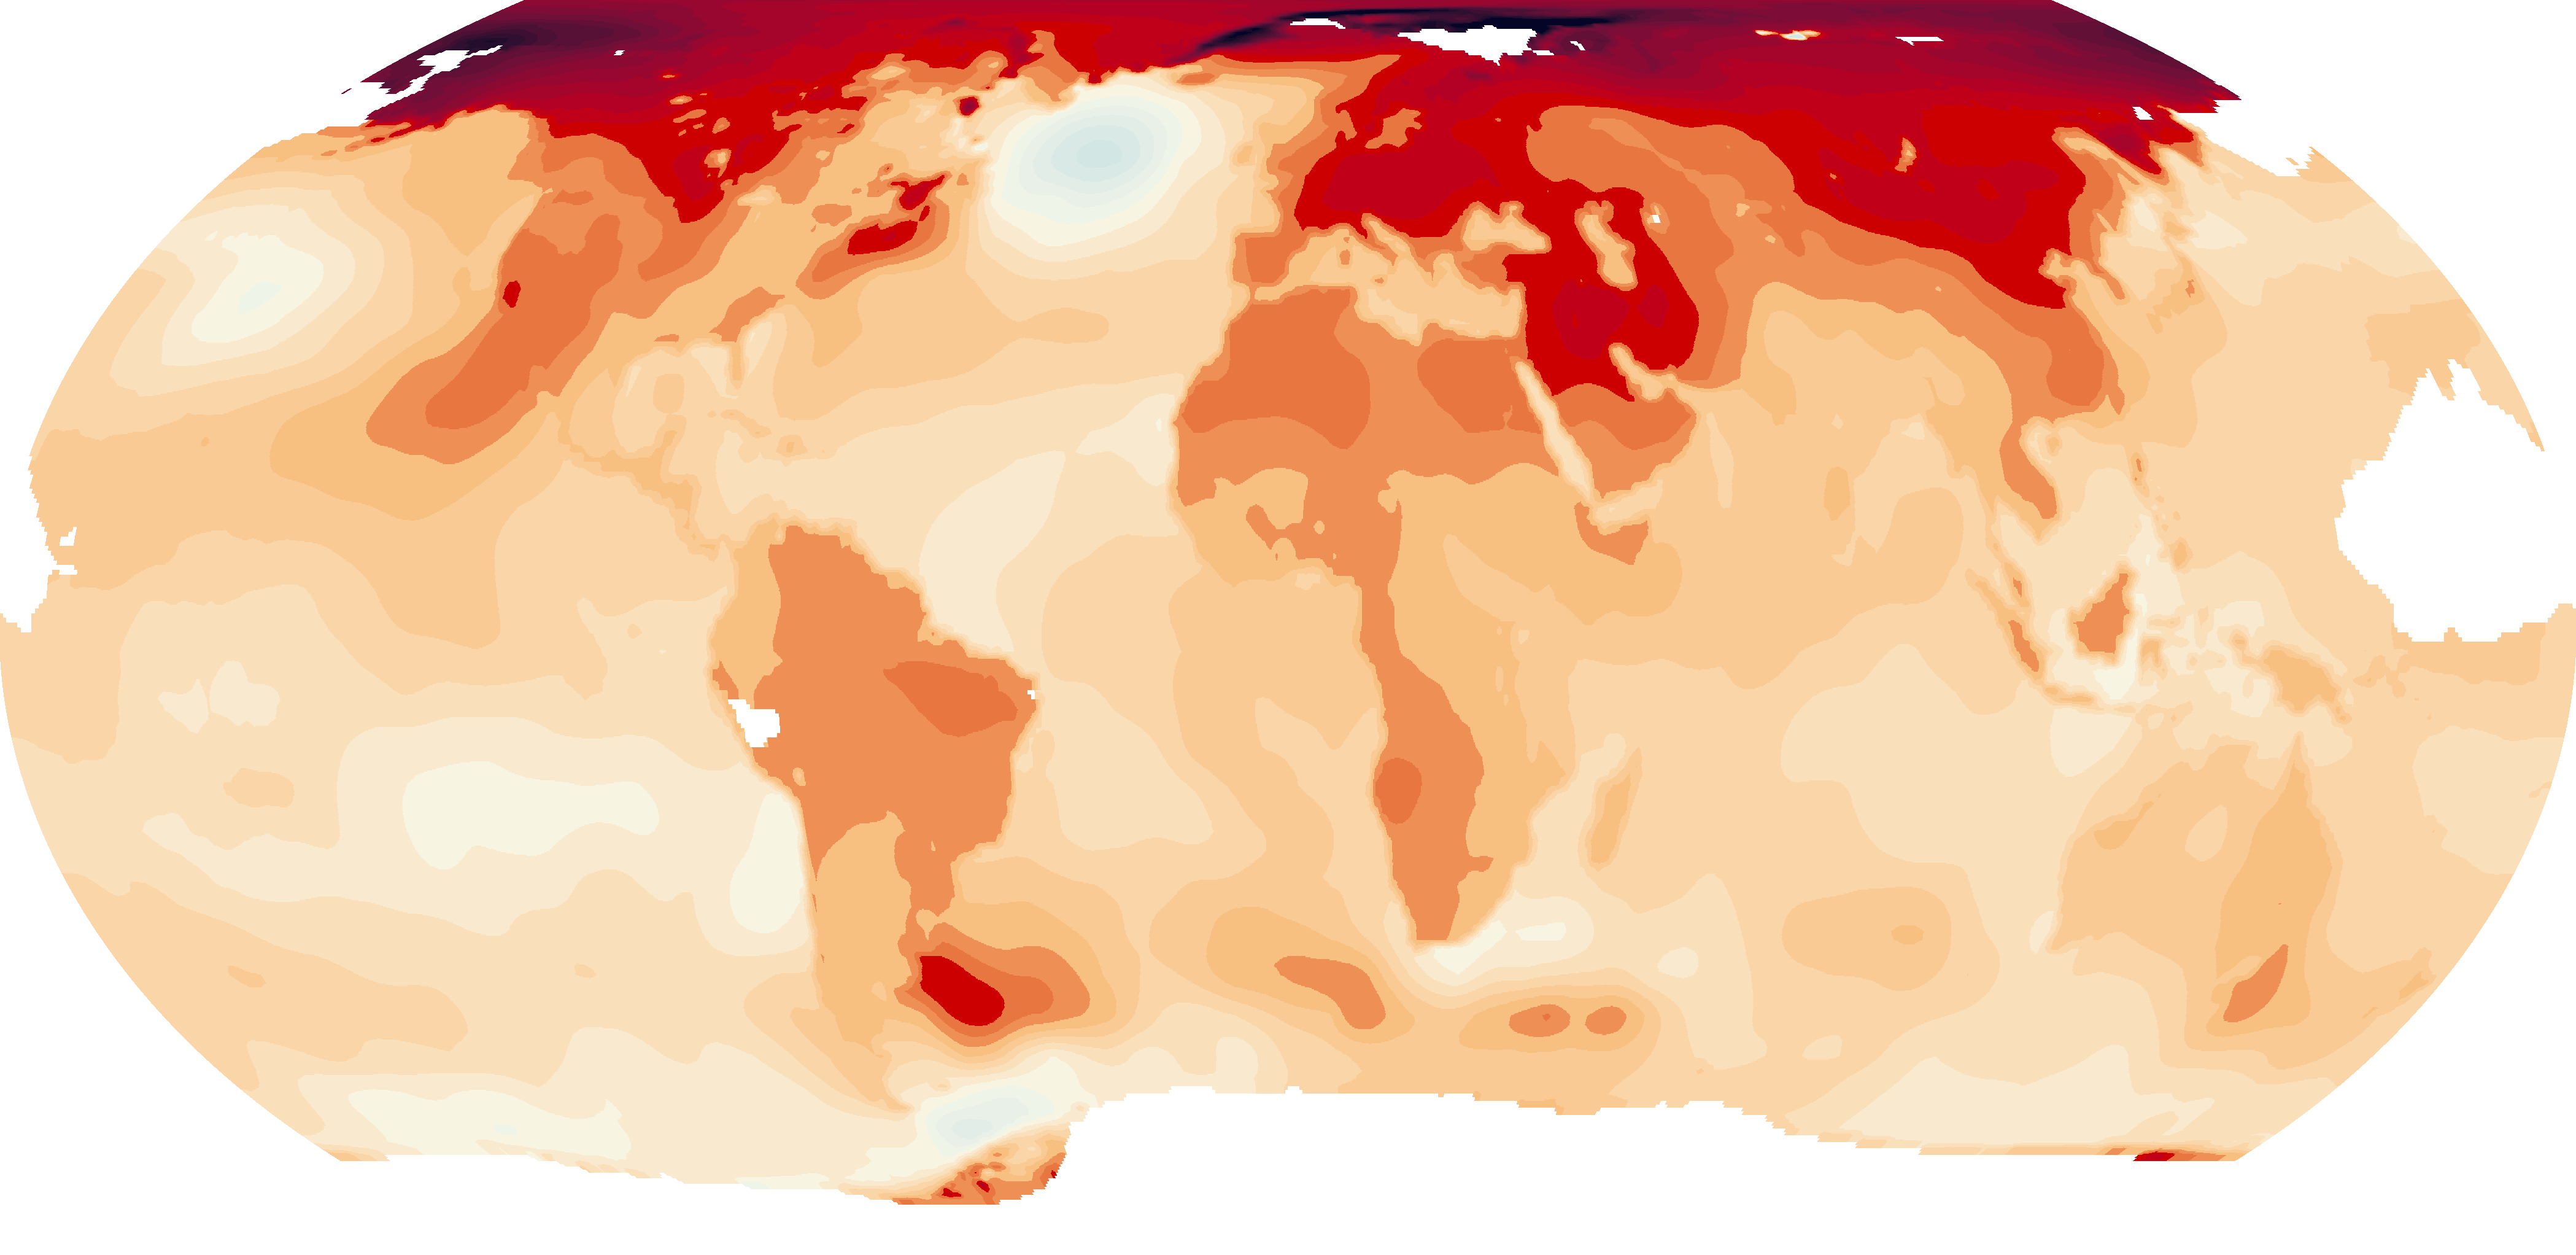 Latem tego roku odnotowano setki temperatury rekordów na całym świecie